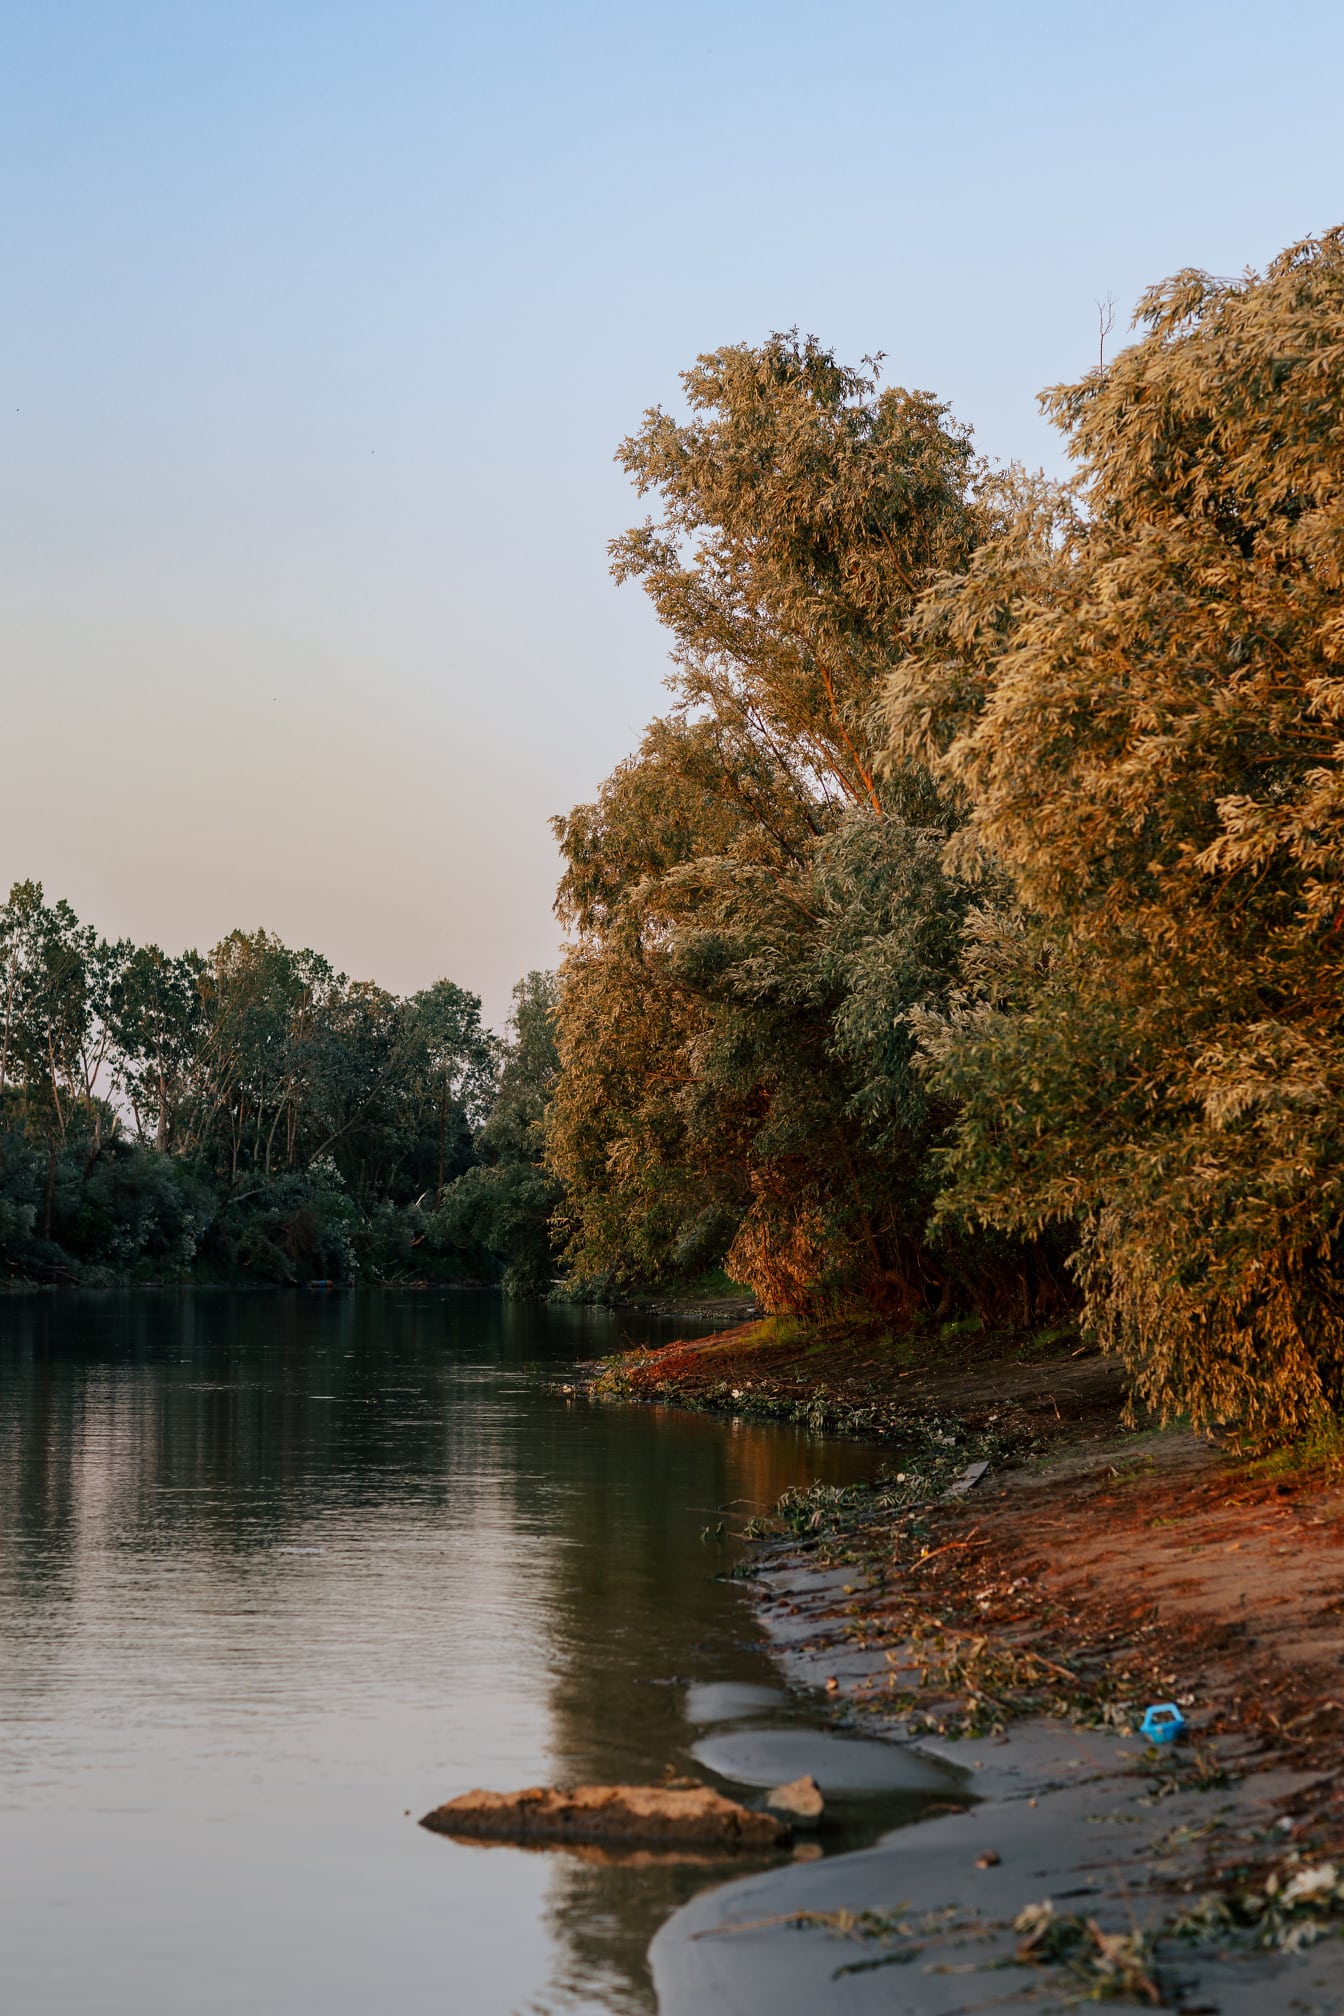 Malul Dunării cu ramuri și frunze în sezonul de toamnă